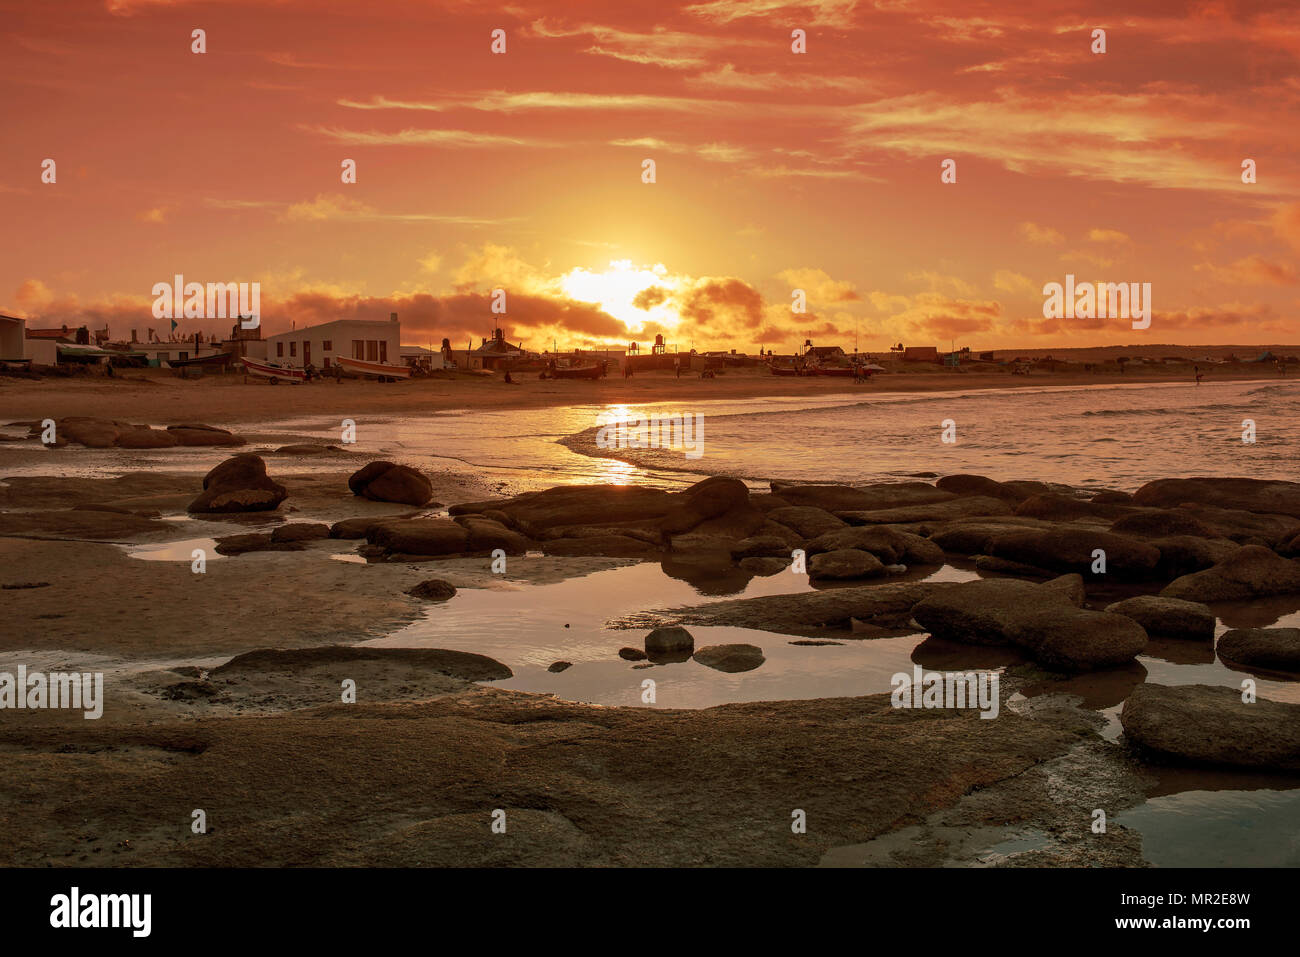 La plage pittoresque de Cabo Polonio avec ses rochers lisses au coucher du soleil. Uruguay, Amérique du Sud Banque D'Images